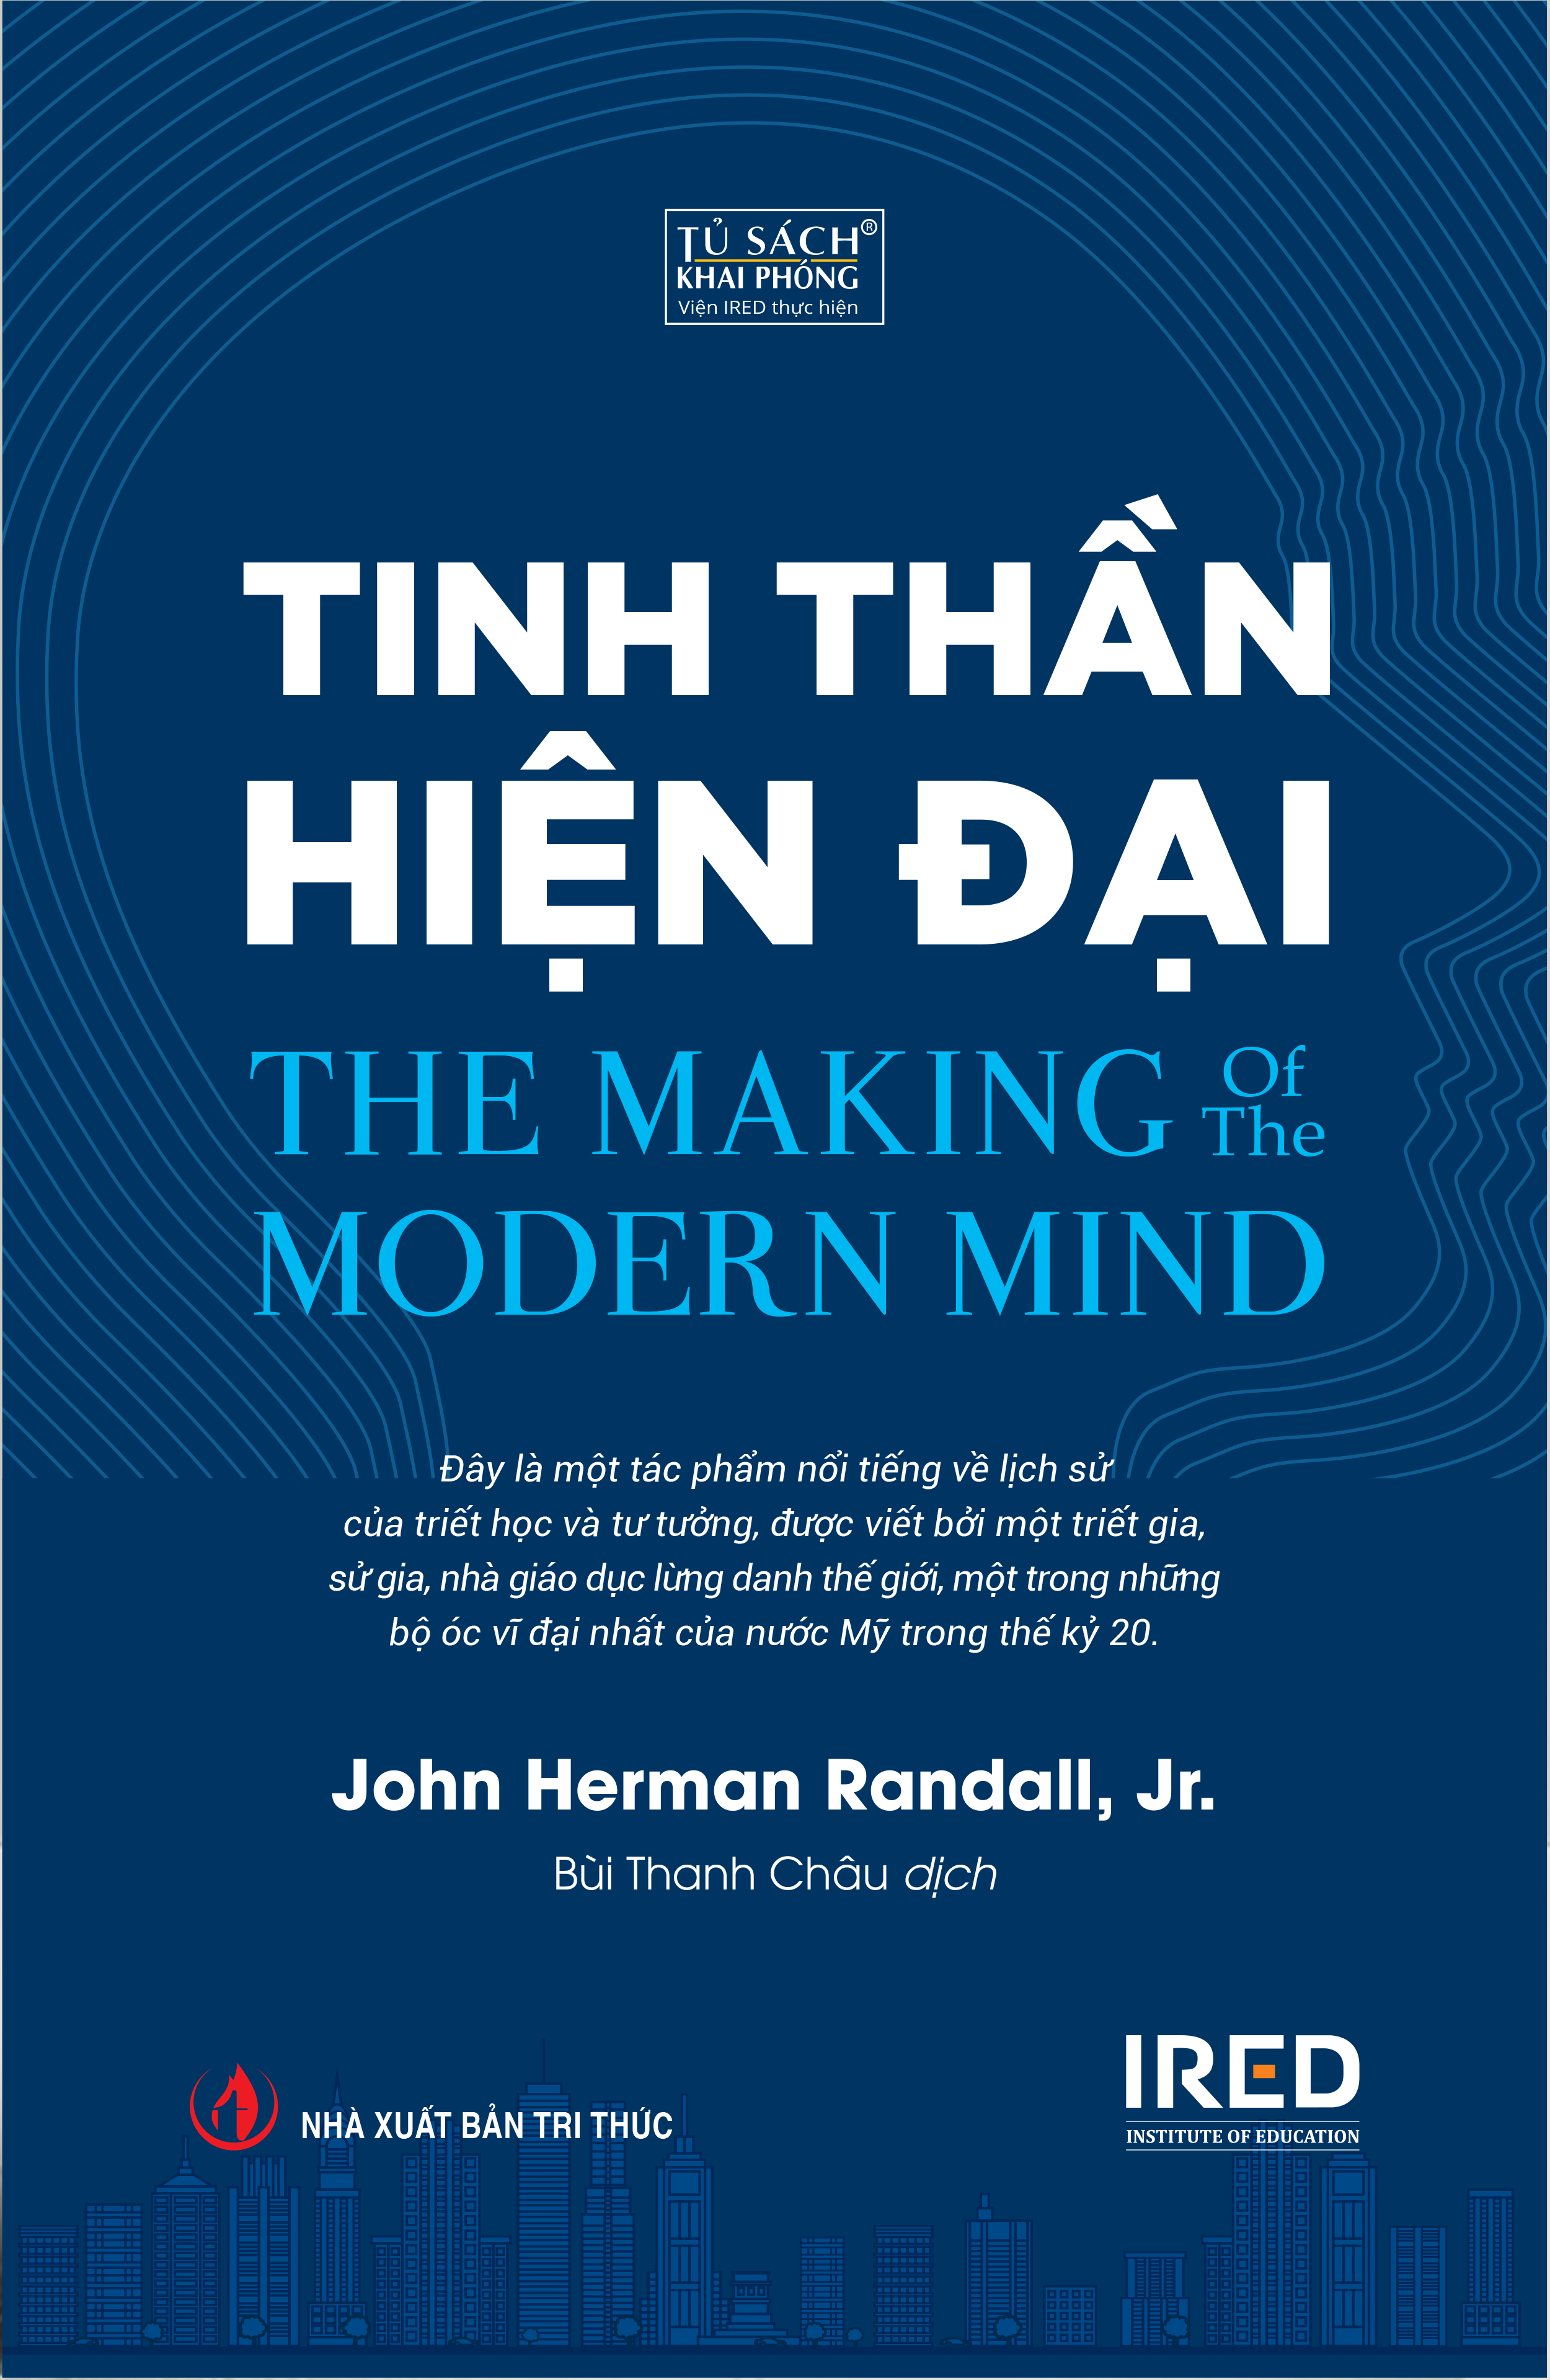 Sách IRED Books - Tinh thần hiện đại (The Making of the Modern Mind) - - Lịch sử hình thành và phát triển - John Herman Randall, Jr.